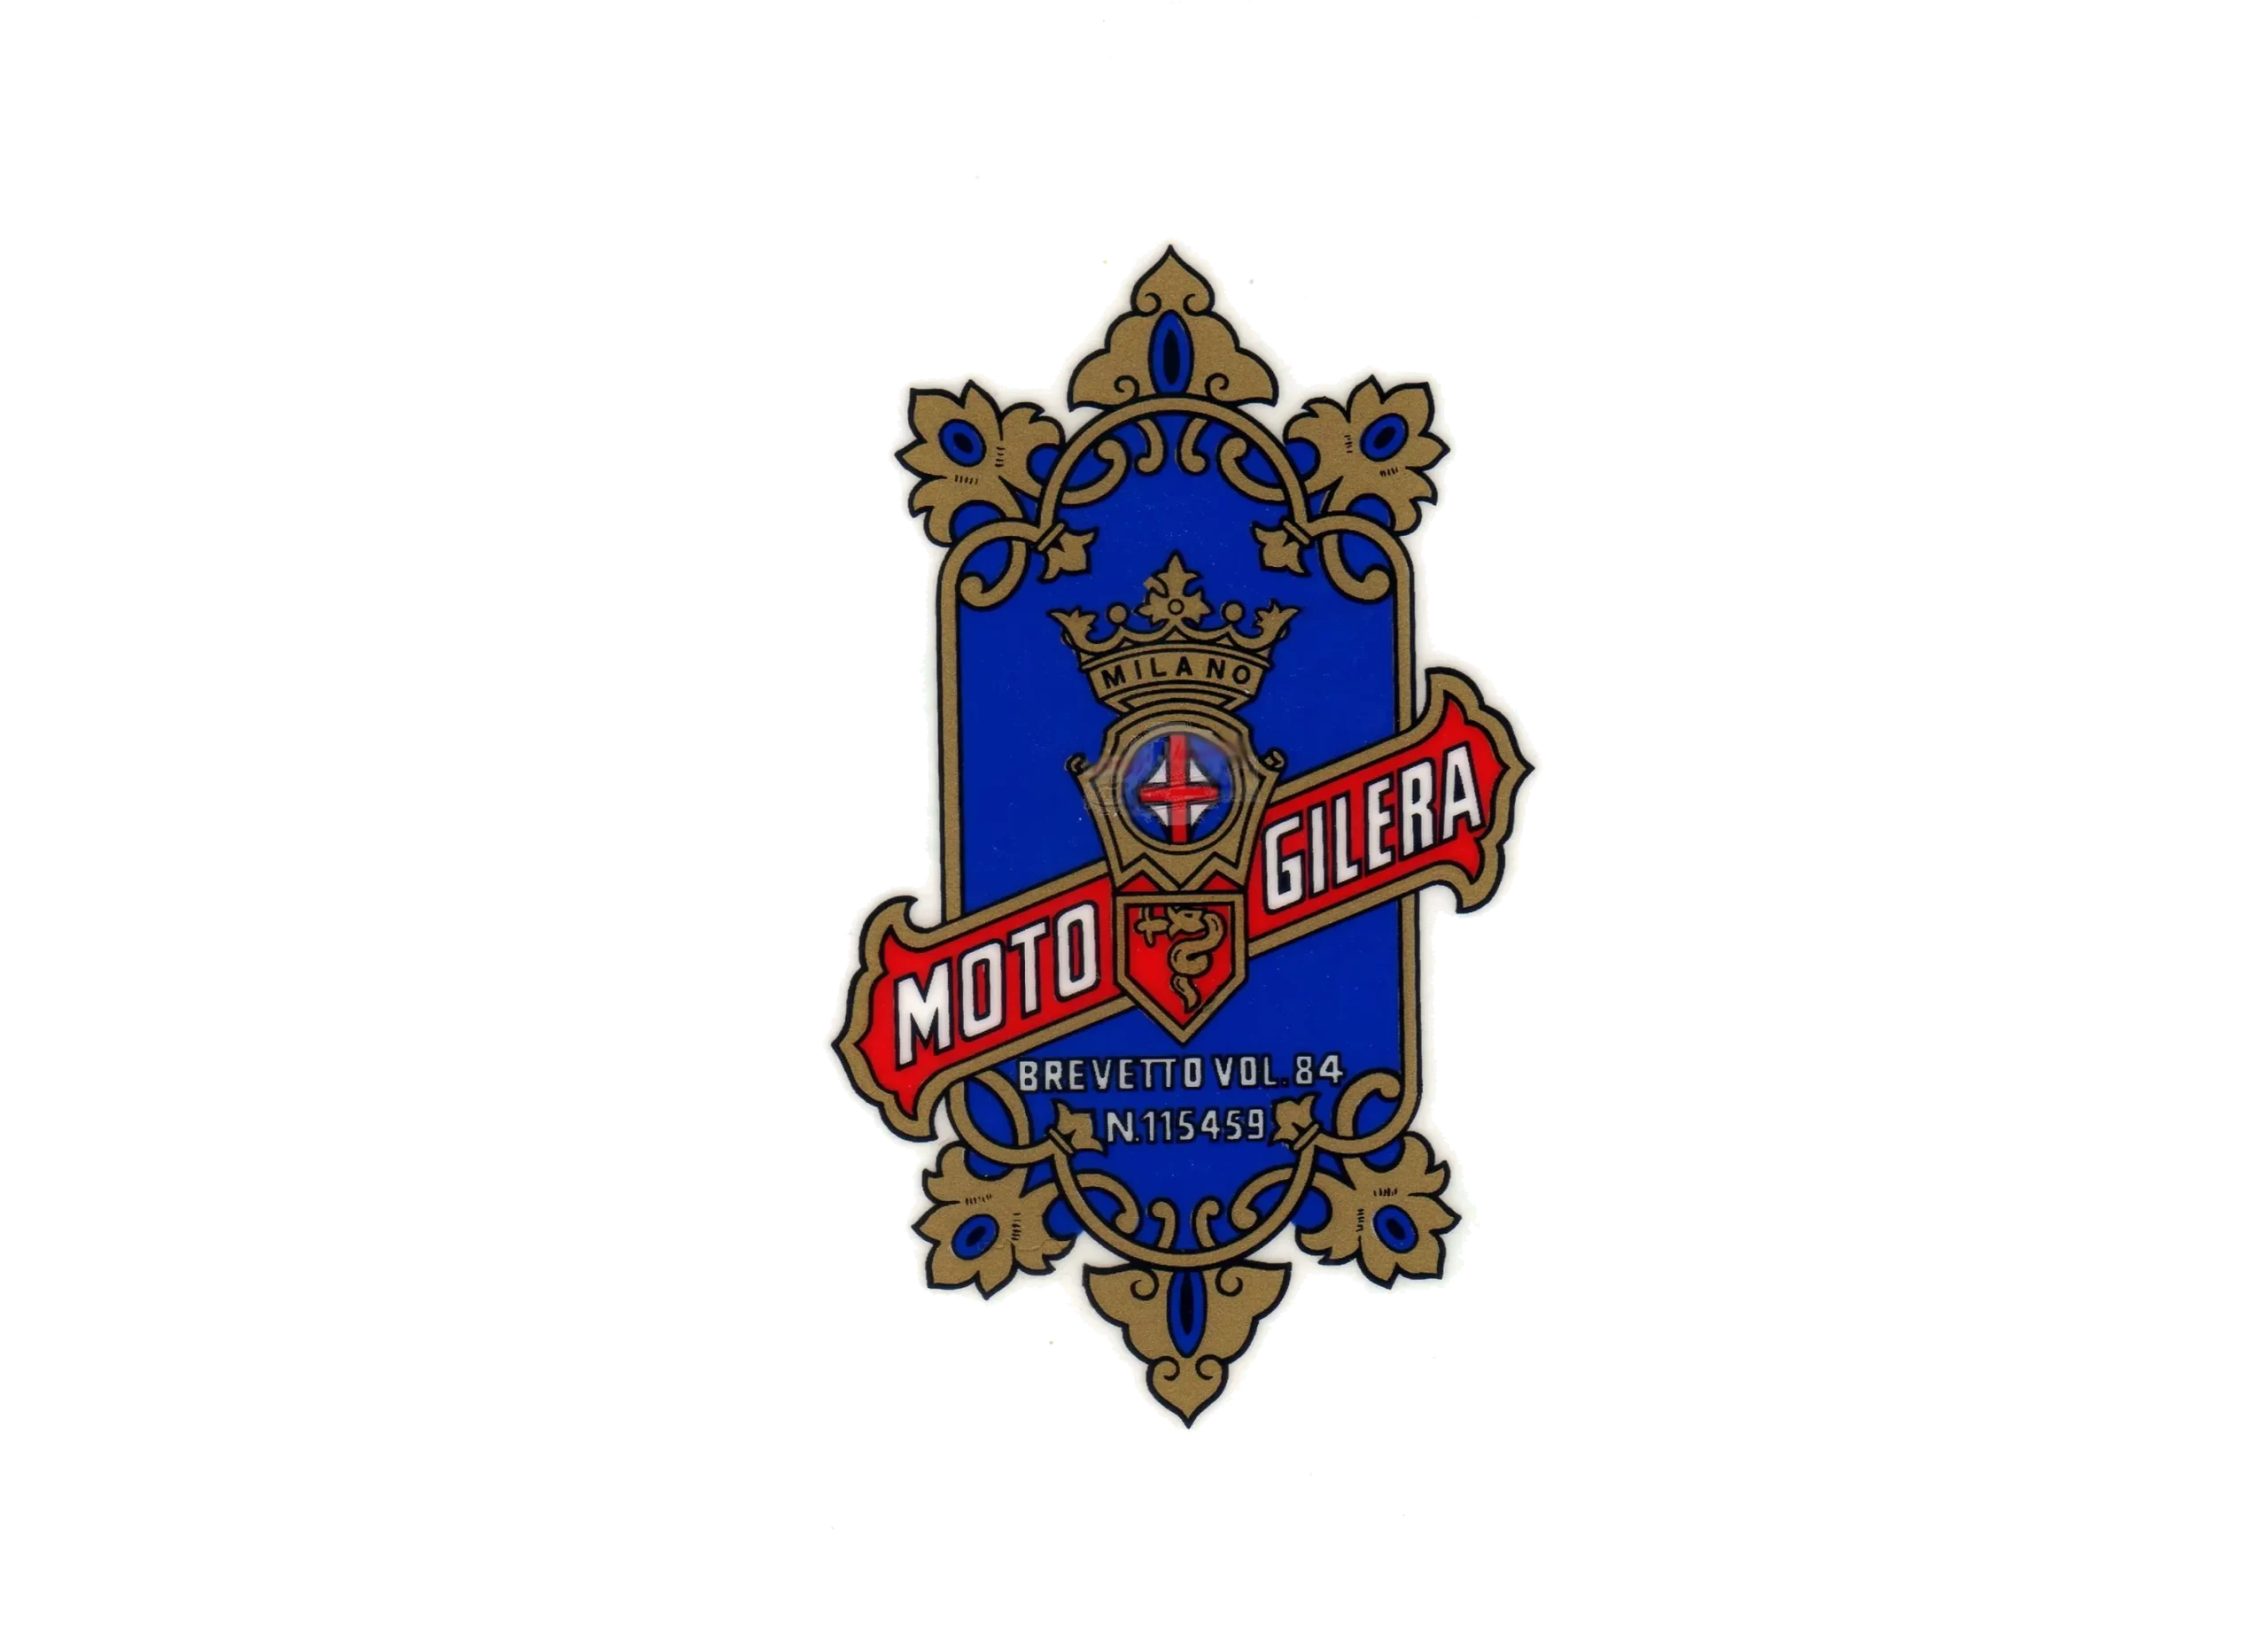 Gilera logo 1926-1934